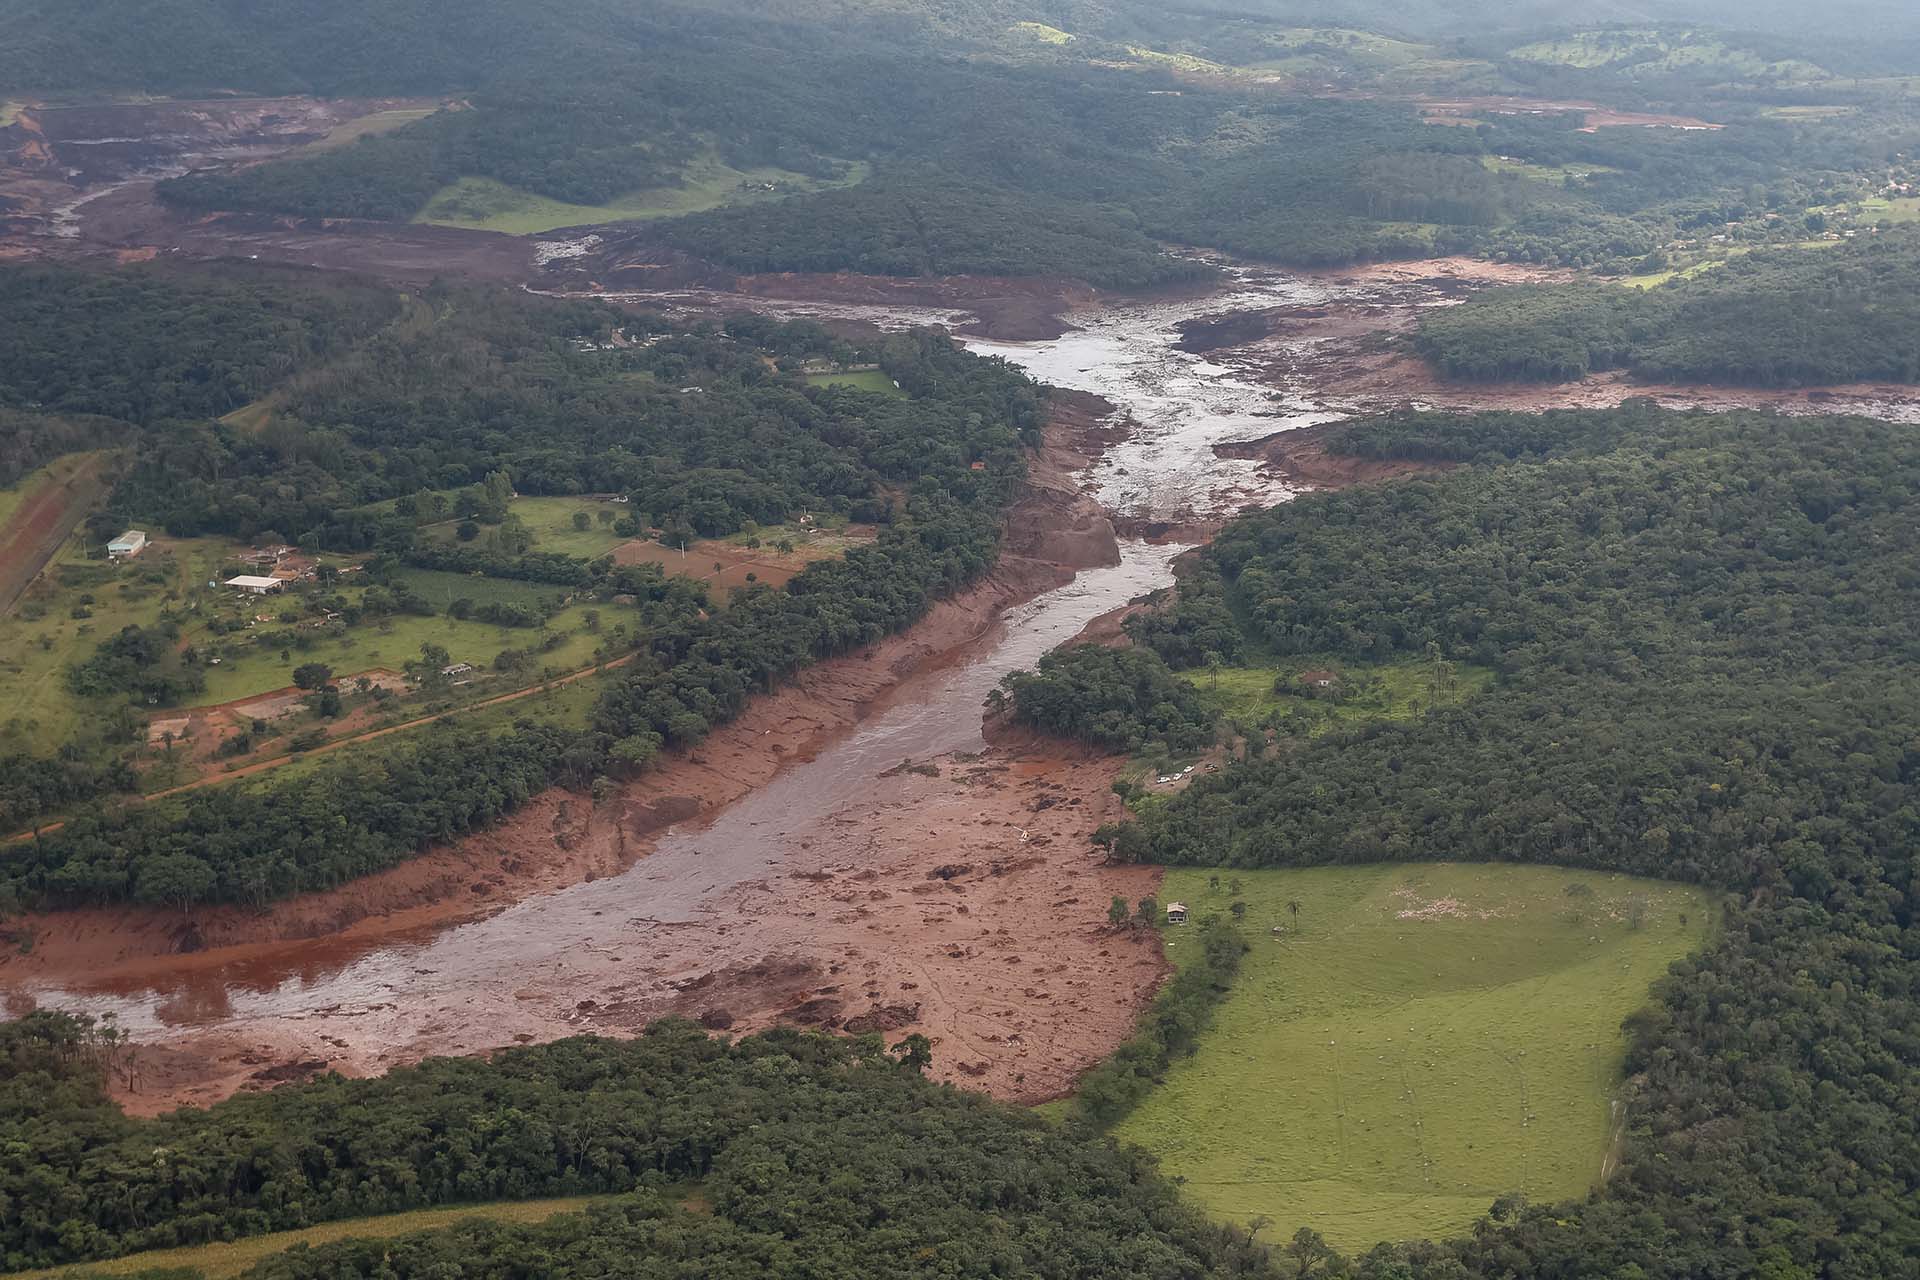 O Presidente da República, Jair Bolsonaro, durante sobrevoo da região atingida pelo rompimento da barragem Mina Córrego do Feijão, em Brumadinho/MG. Foto: Isac Nóbrega/PR